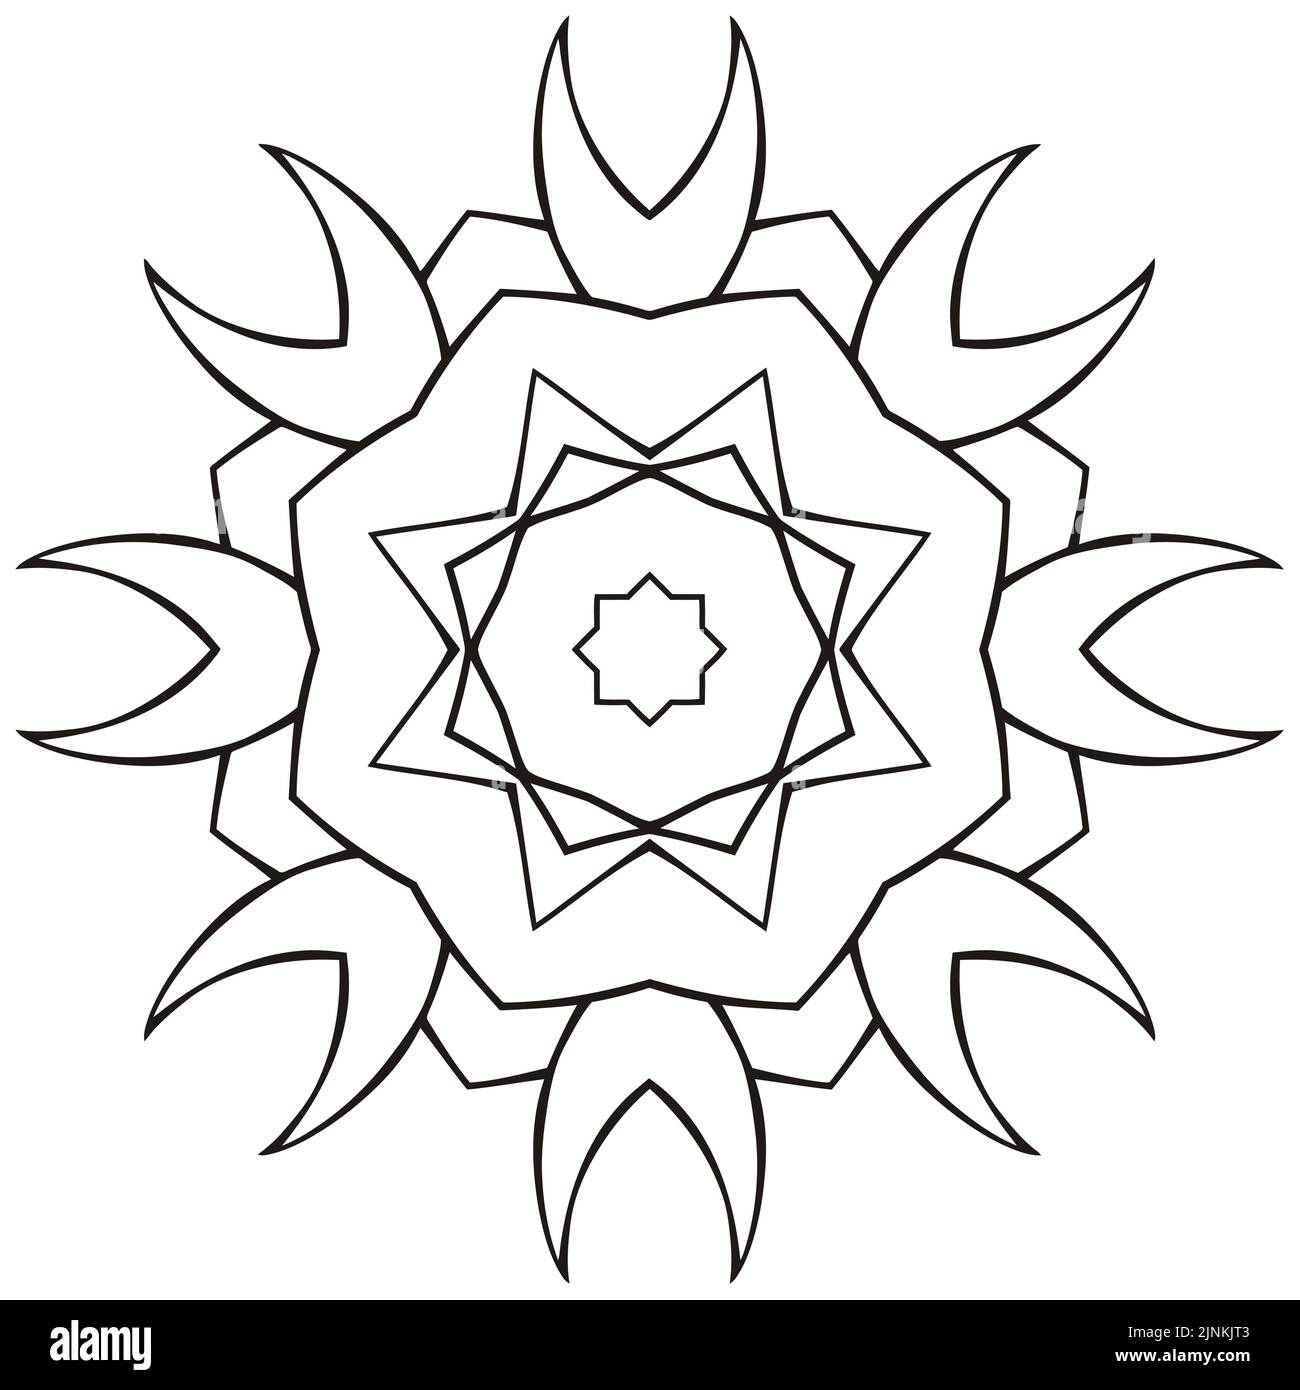 Vector rund Mandala-Logo, ethnische Ornament für Spa, florale Boutique, chinesischen oder indischen Shop, Yoga-Center, vegane Kraft, arabisch orientalisch, Wellness. Stock Vektor